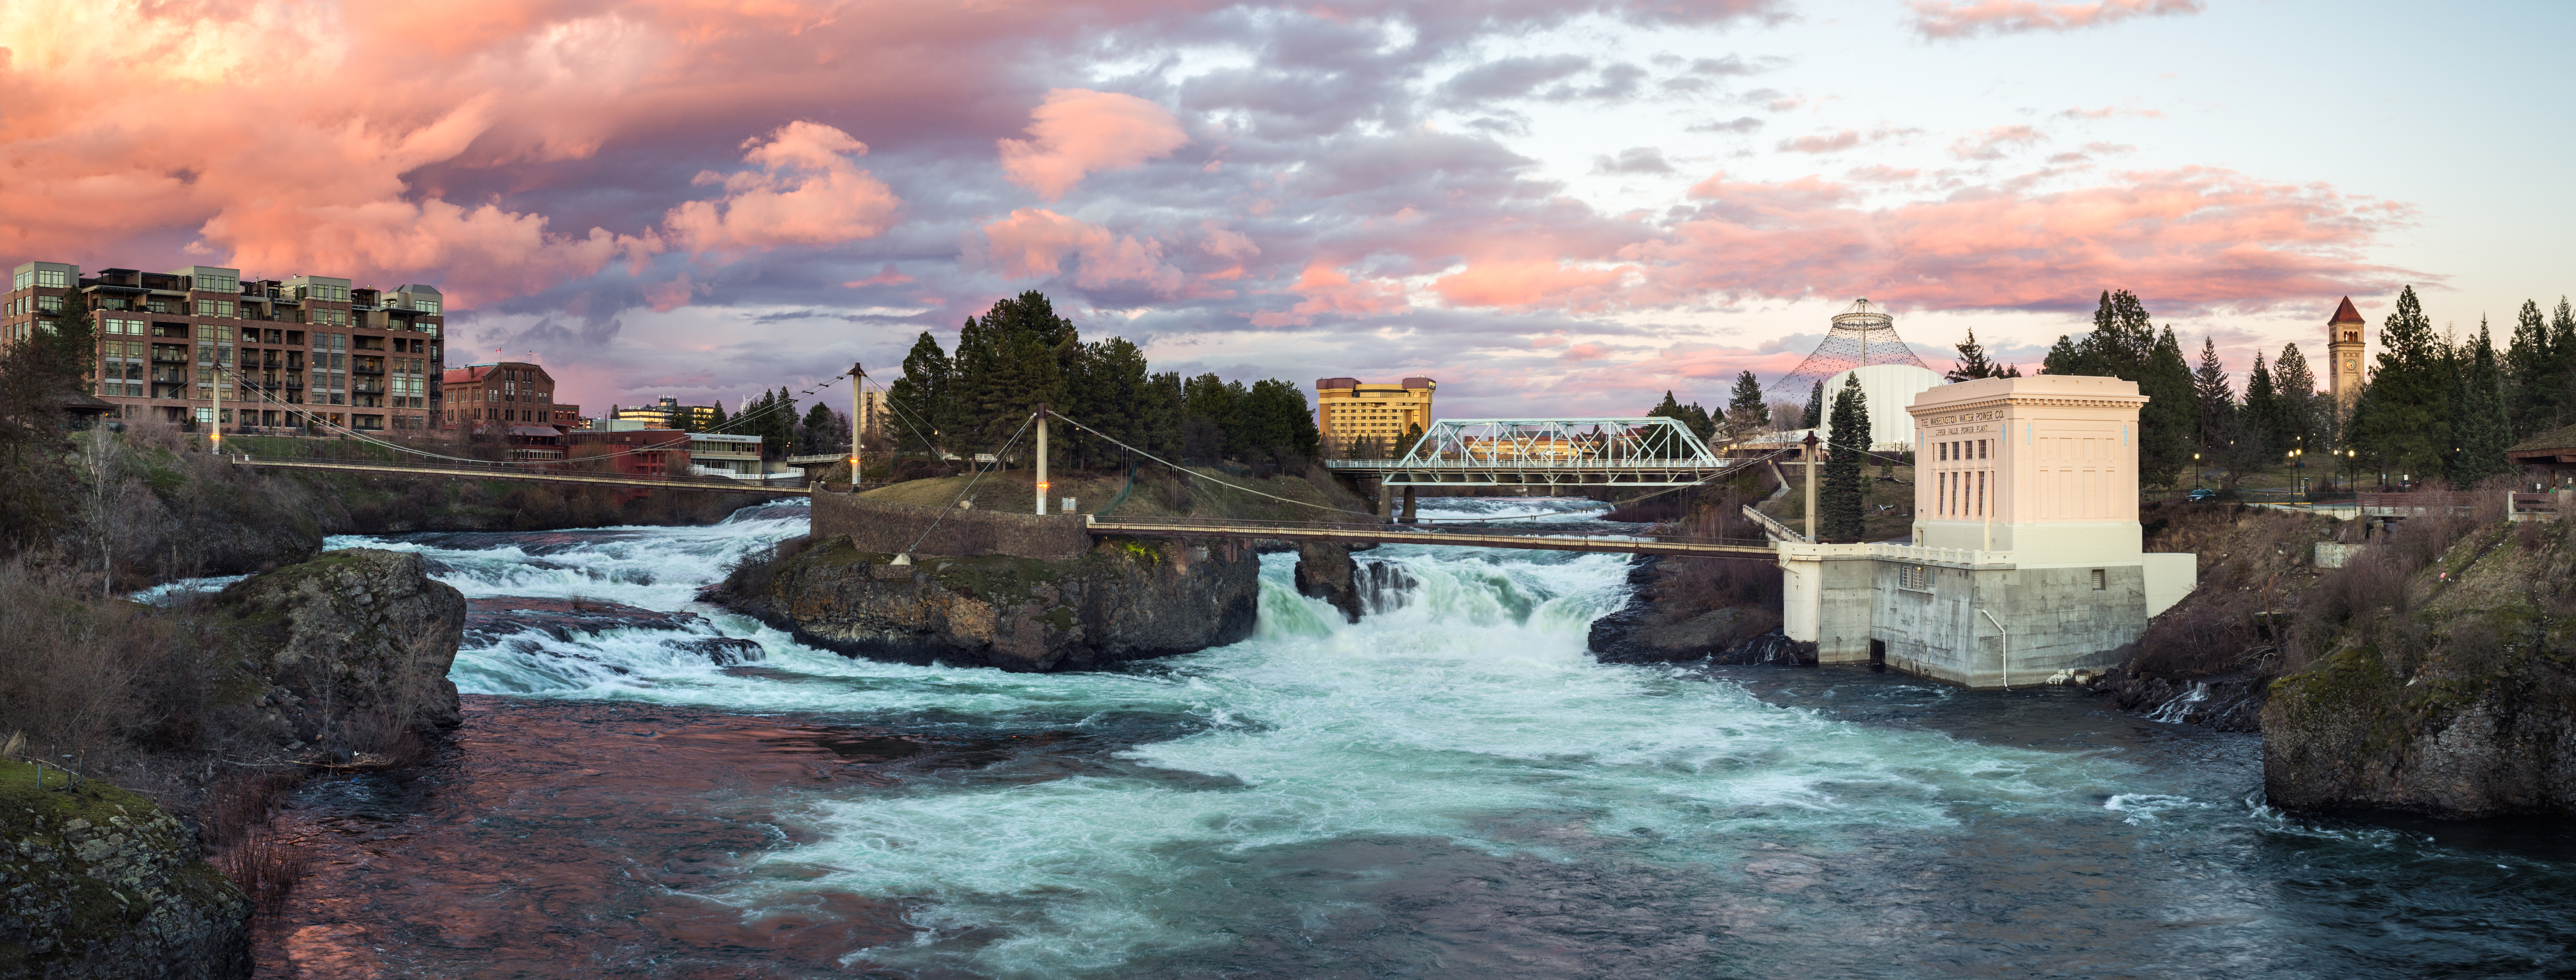 Spokane is your weekend destination | Seattle Refined